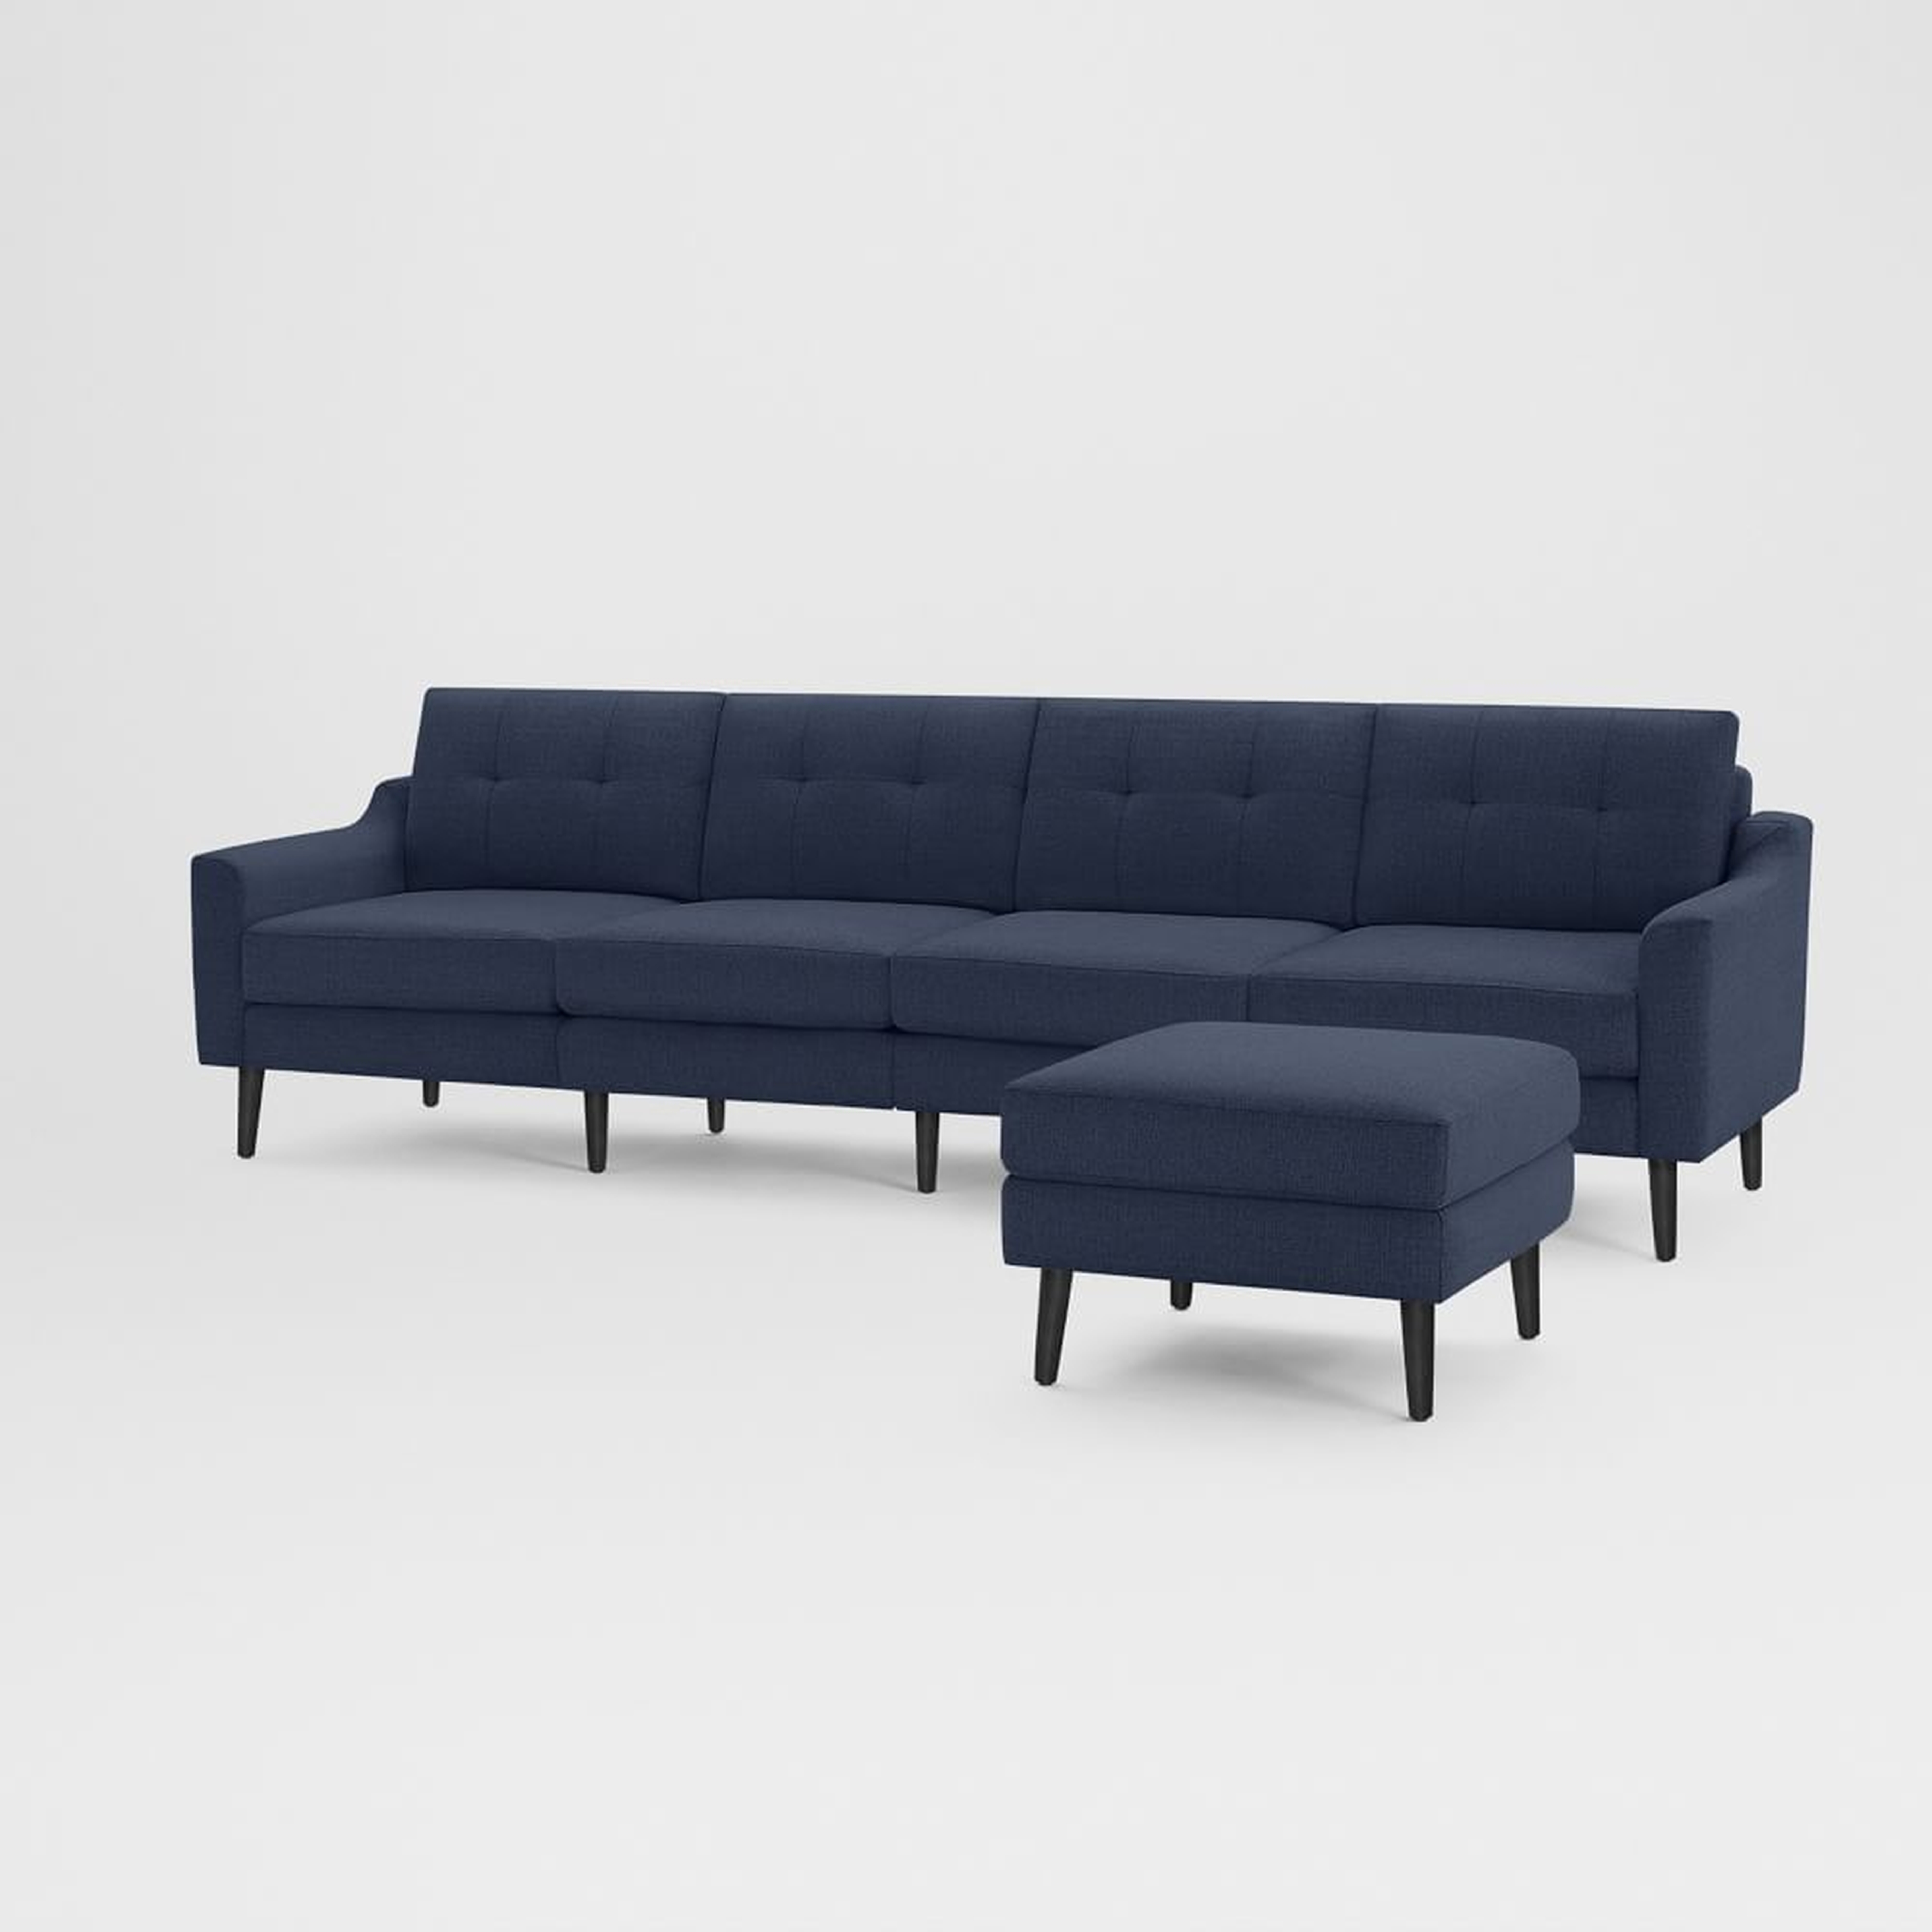 Nomad Slope Fabric King Sofa with Ottoman, Navy Blue, Ebony Wood - West Elm